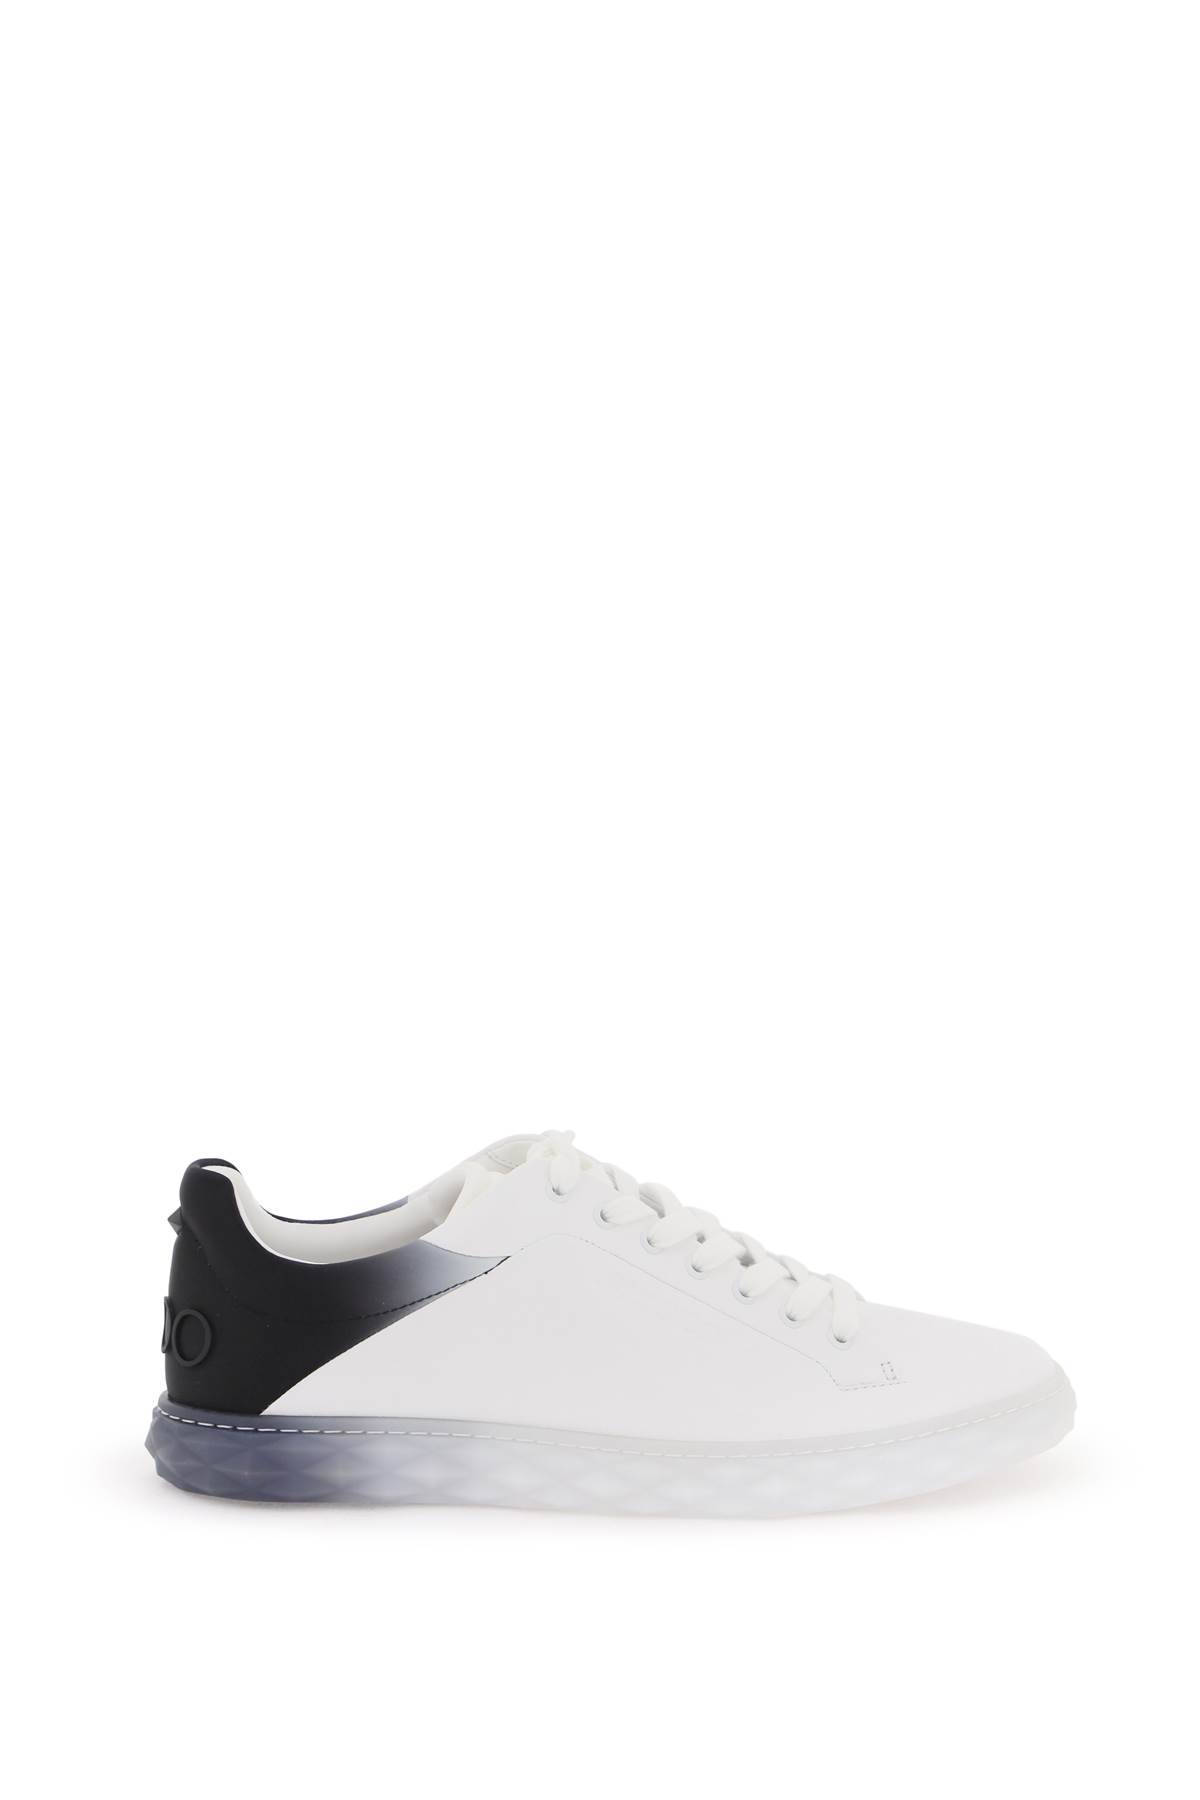 Shop Jimmy Choo Diamond Light/m Ii Sneakers In White,blue,black